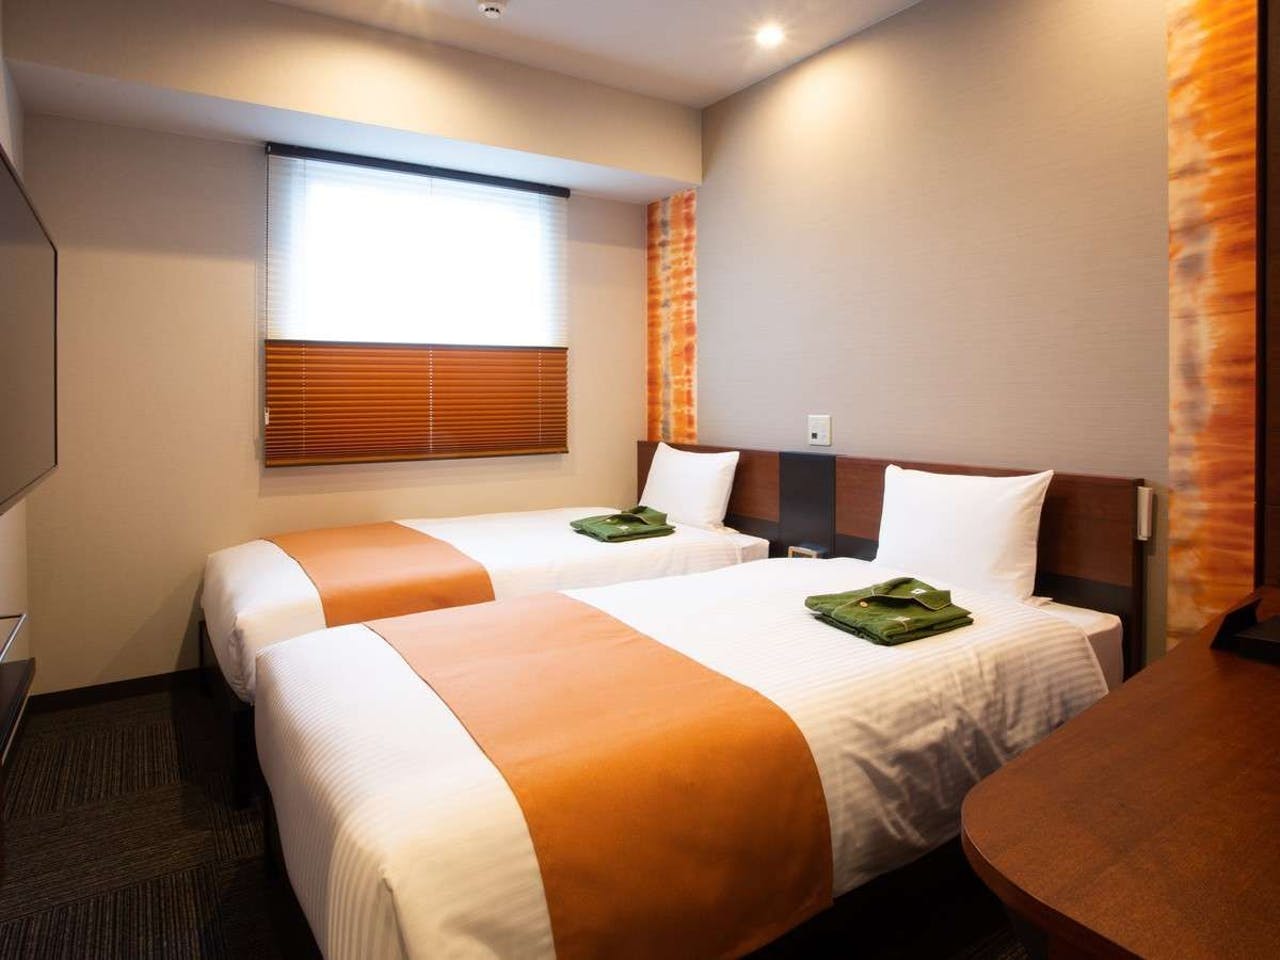 โรงแรม เปิดใหม่ คุเรทาเกะ อิน พรีเมียม ชิซูโอกะ แอนเน็กซ์ Room ห้องพัก ชิซูโอกะ